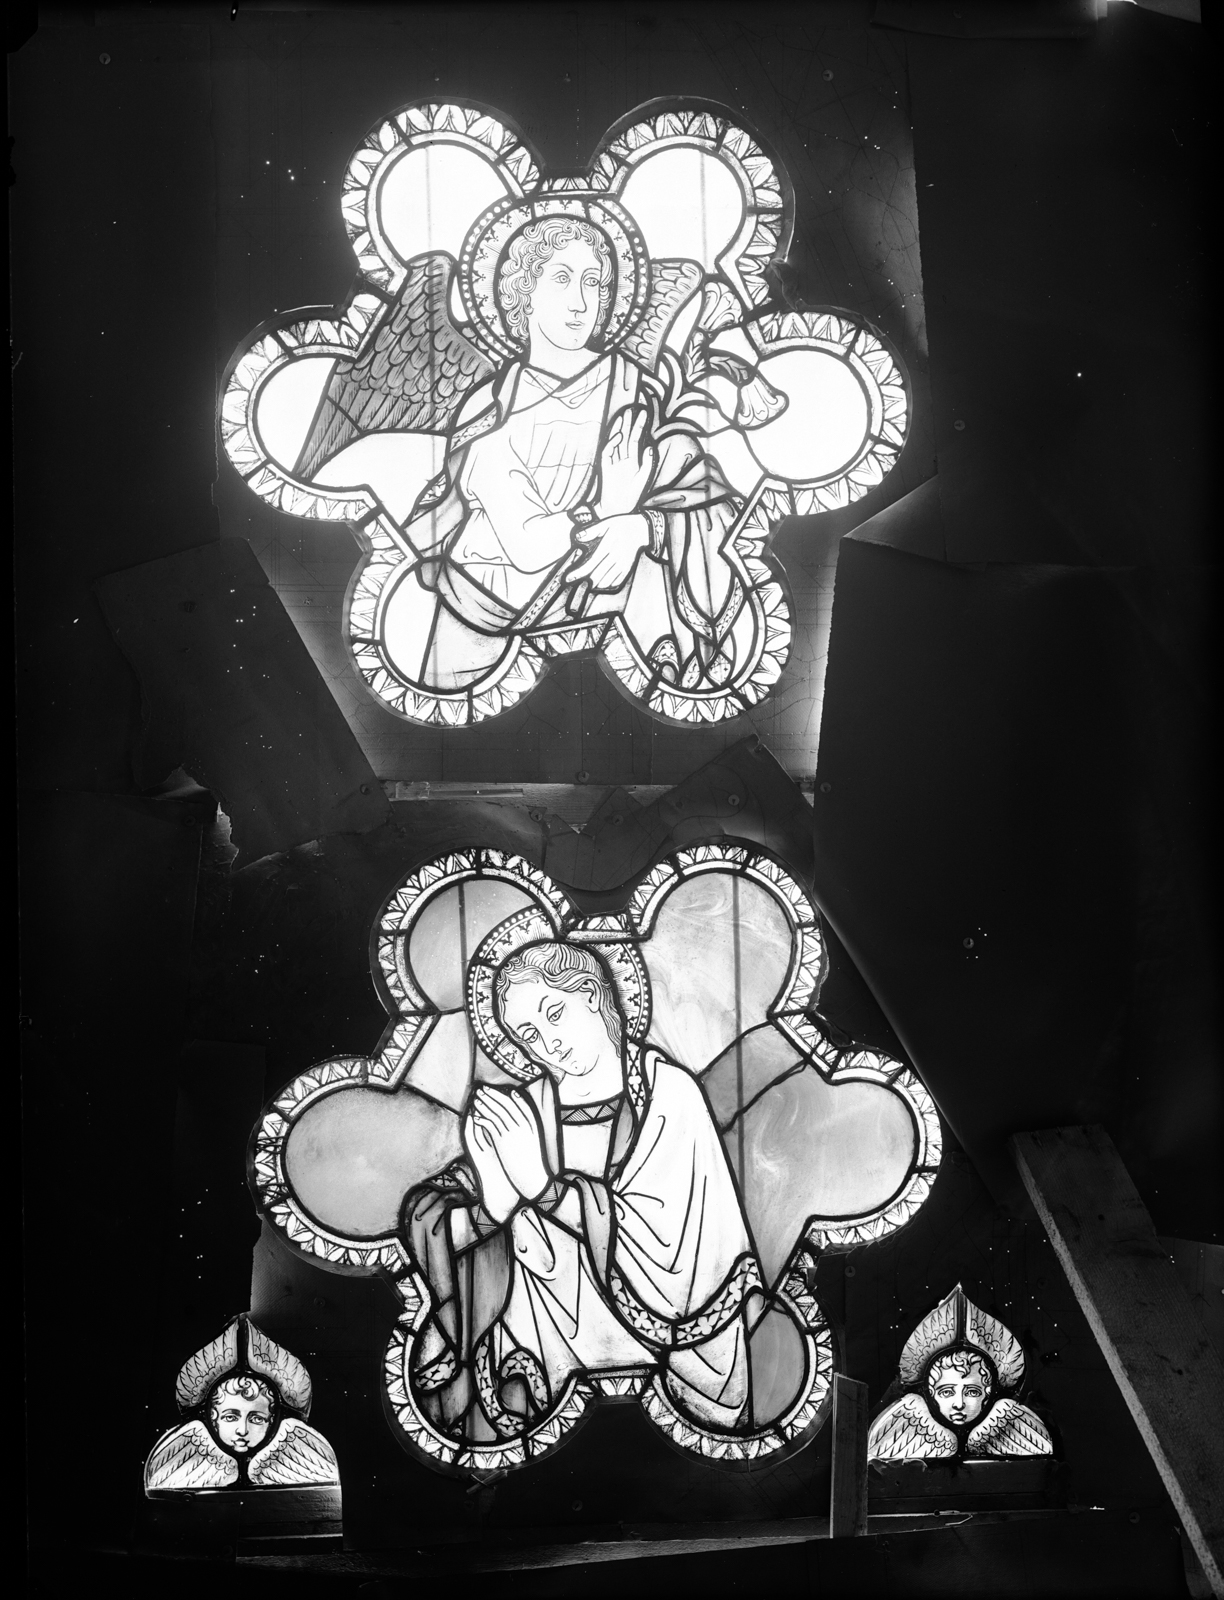 Arti applicate - Vetrate dipinte - Restauri <1948-1950> (negativo, insieme) di Zagnoli, Alfonso, Costa, Lorenzo, Antonio da Crevalcore (metà XX)